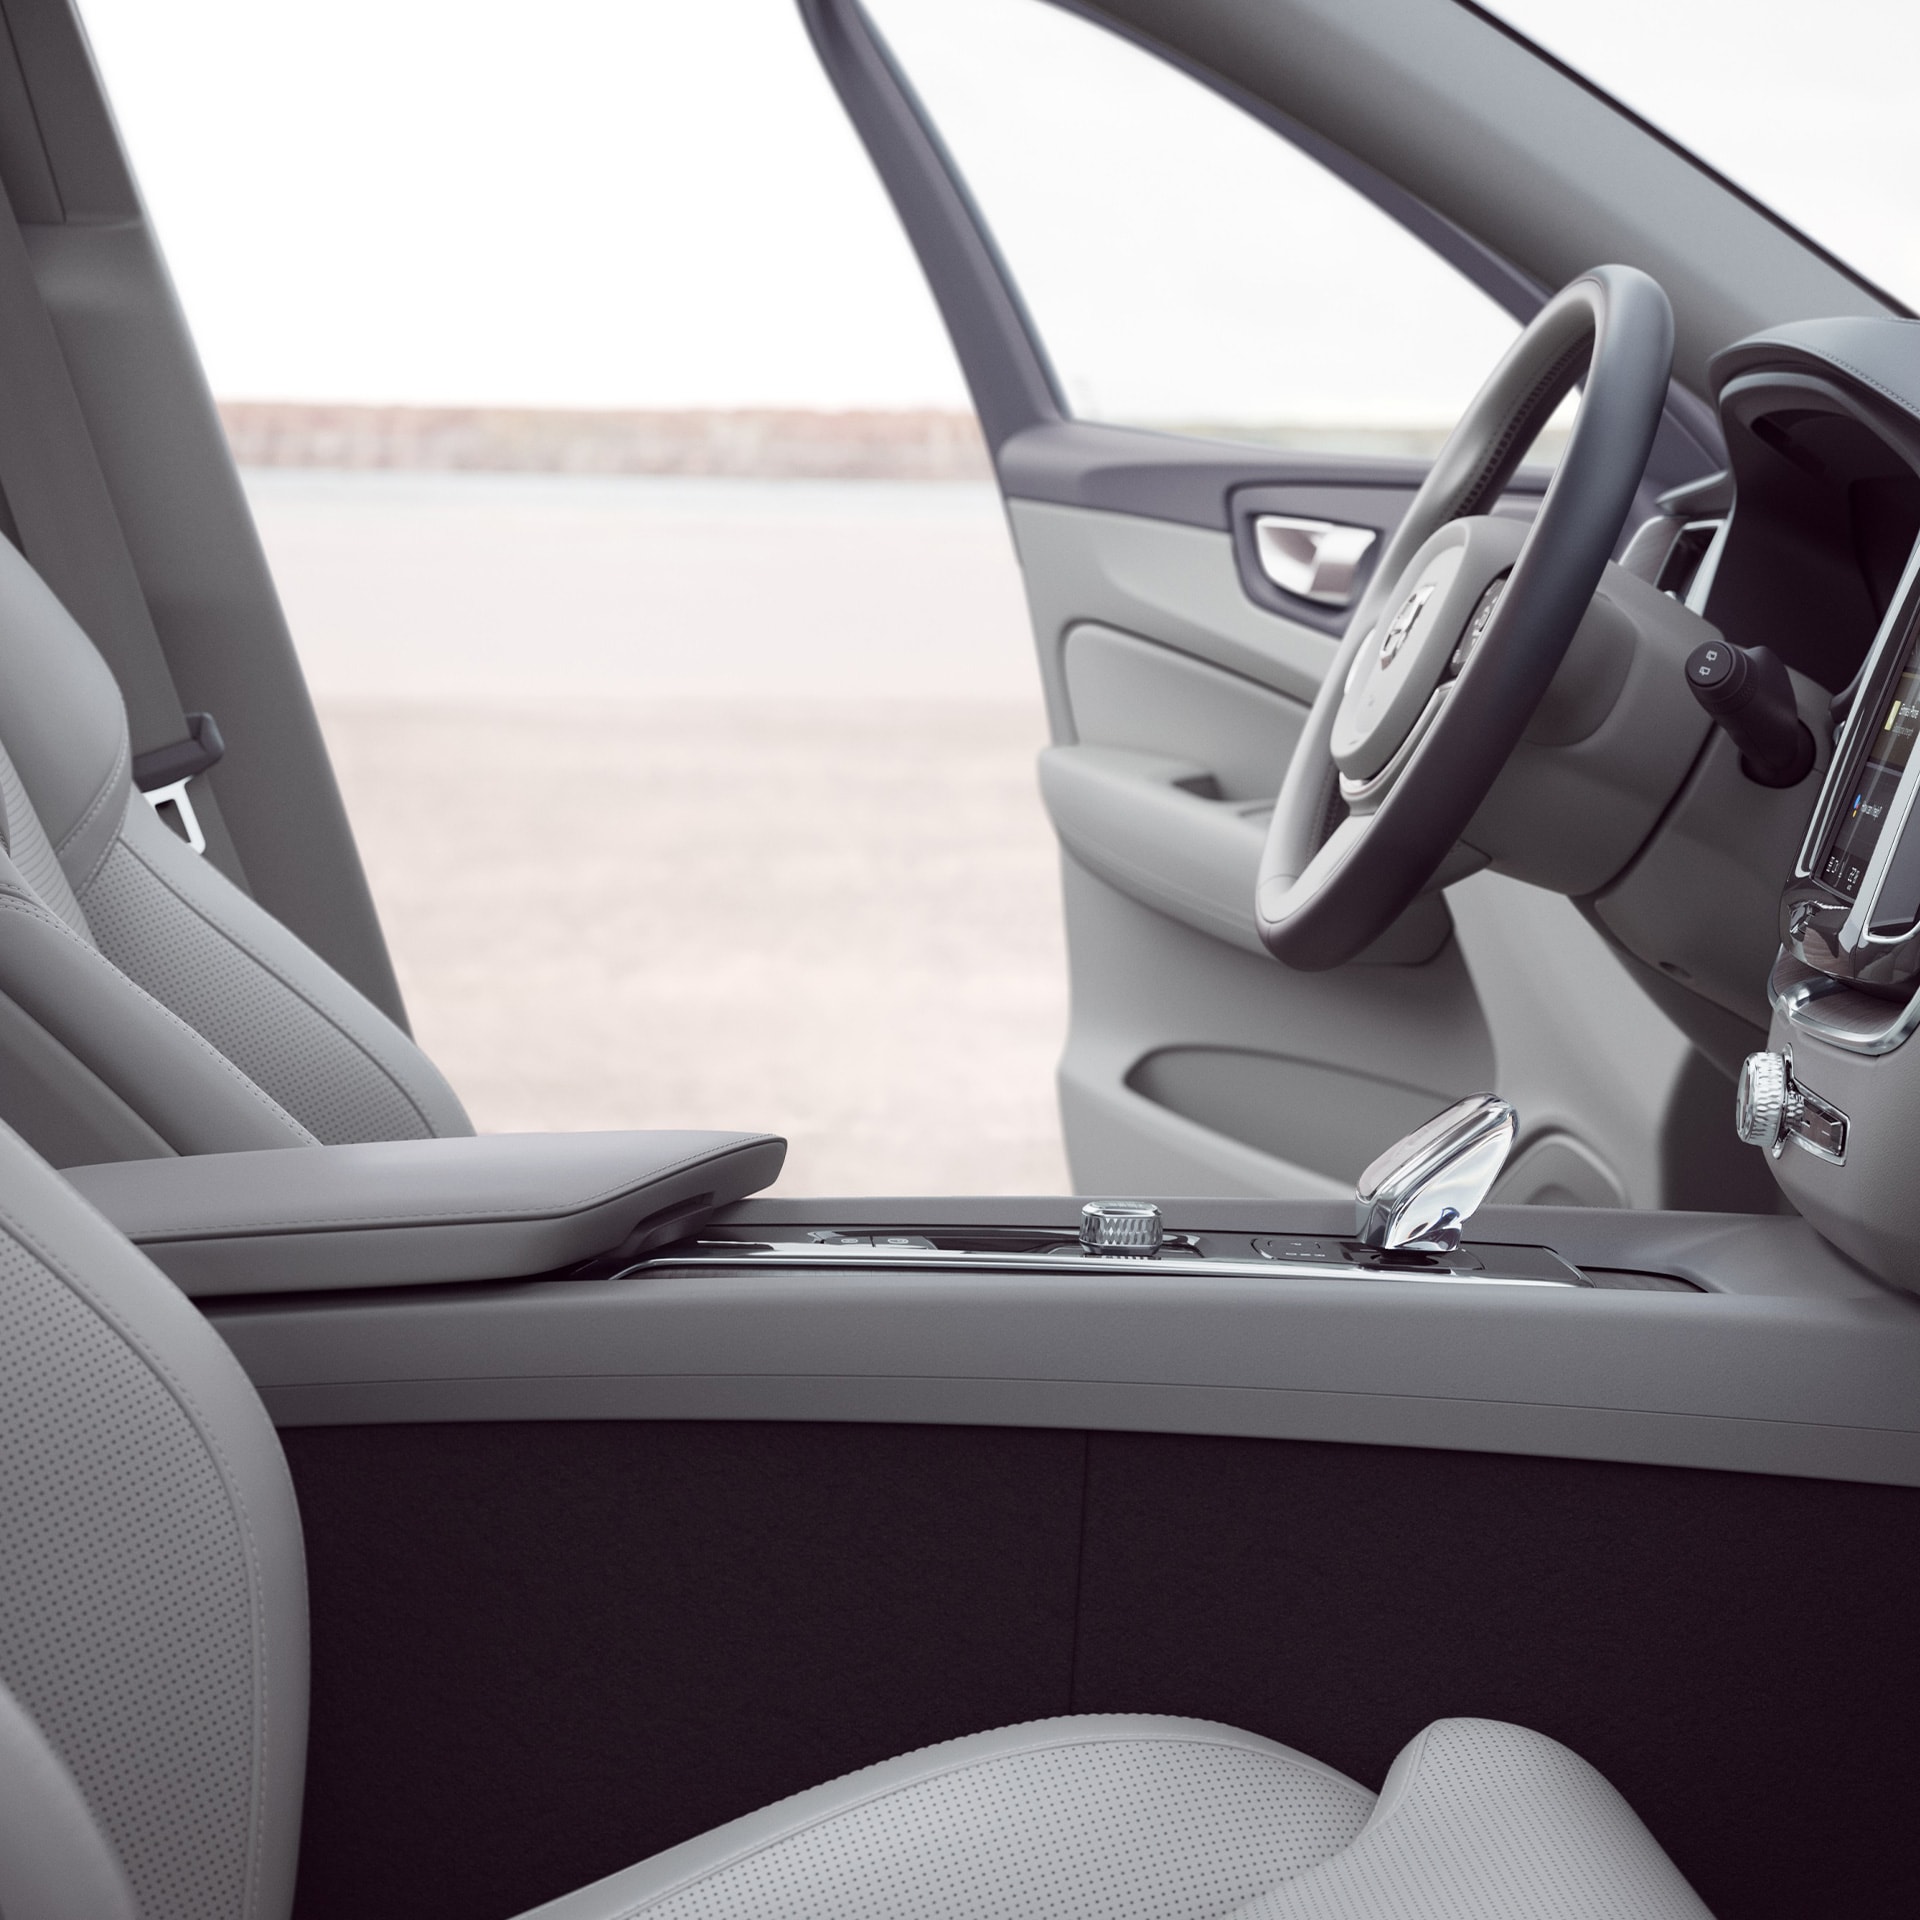 Οι εμπρός εσωτερικοί χώροι ενός Volvo XC60 με ανοιχτή την πόρτα του οδηγού.